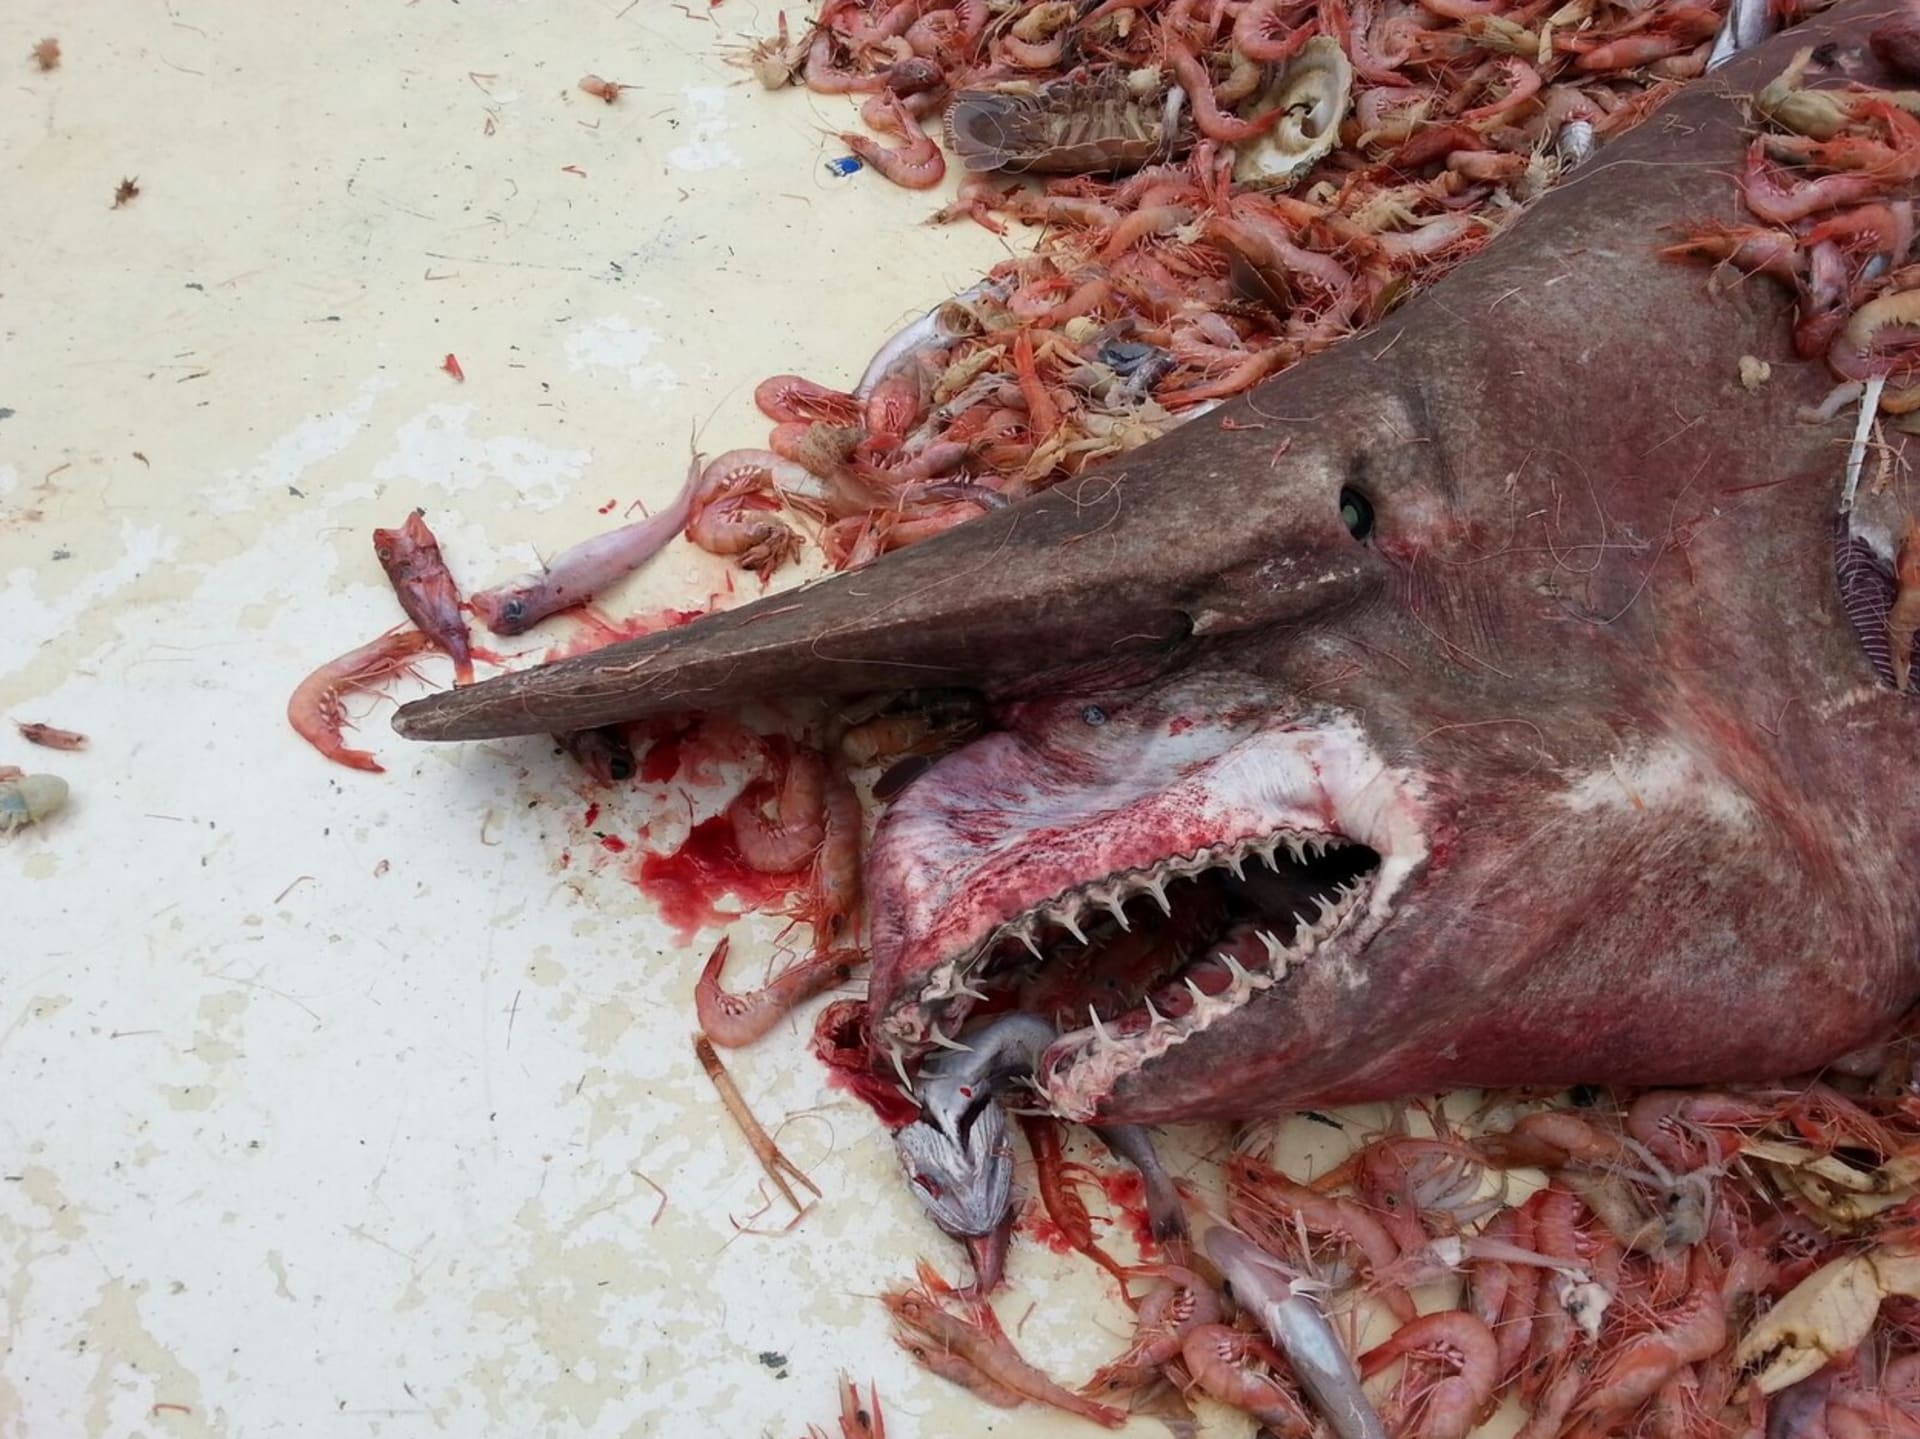 Žralok šotek snadno uvízne v sítích rybářů